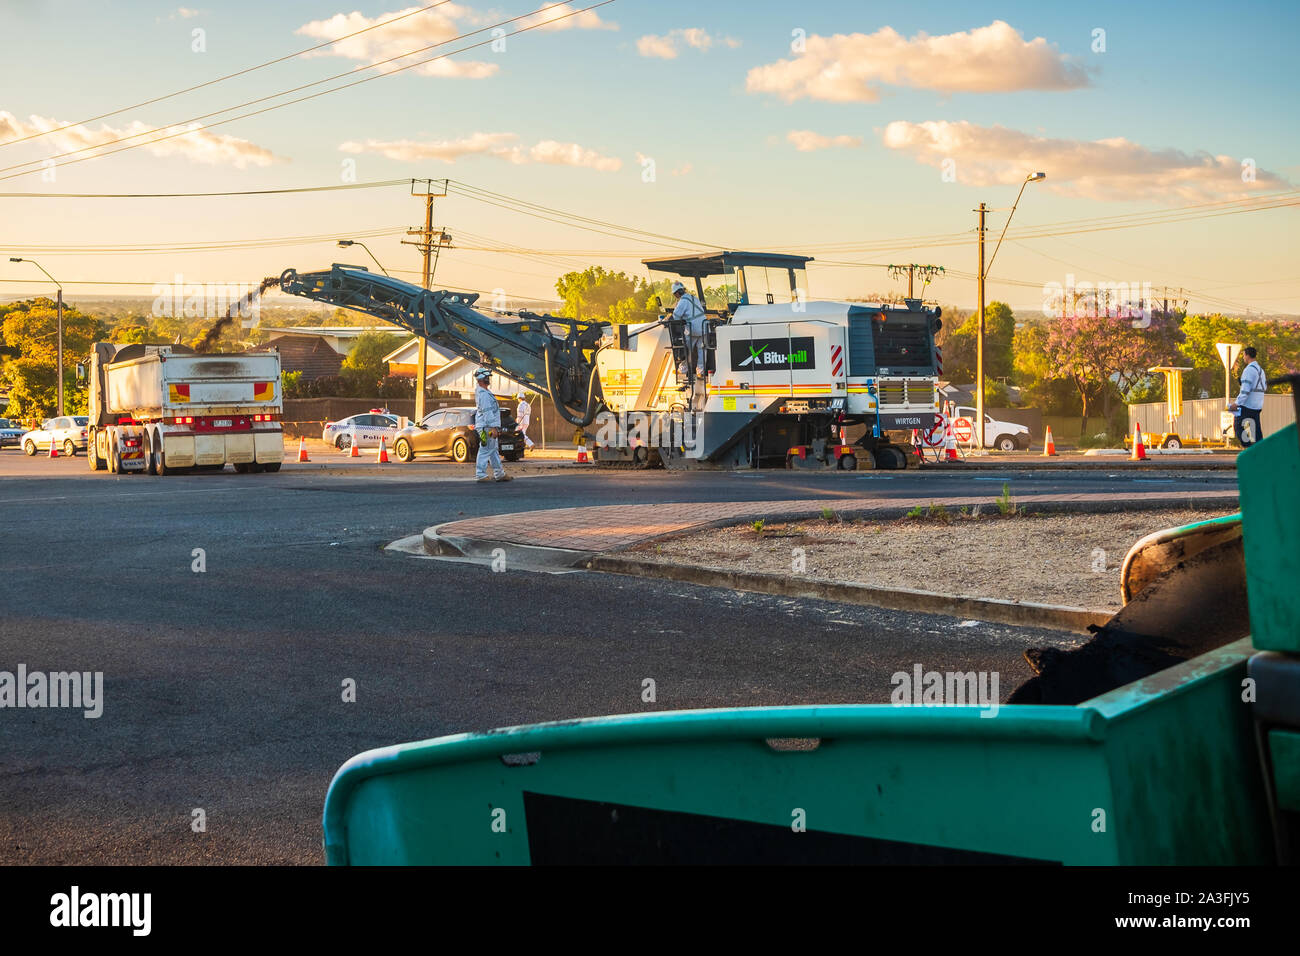 Adelaide, South Australia - Dezember 4, 2017: Bauarbeiten für neue Straße Profiling und Asphalt legen mit Einsatz von modernen Kaltfräse auf Springbank Stockfoto